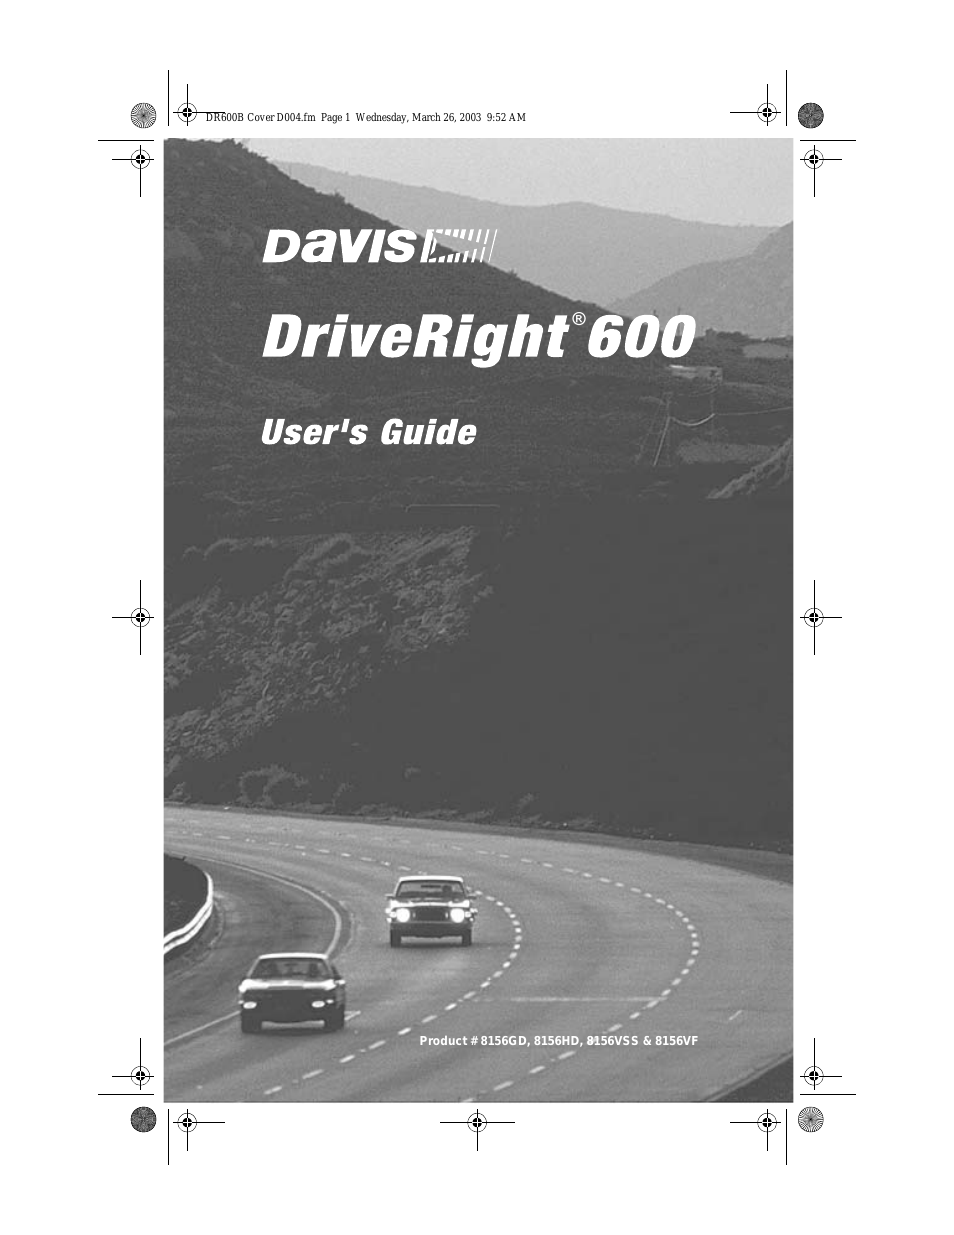 DRIVERIGHT 600 8156HD